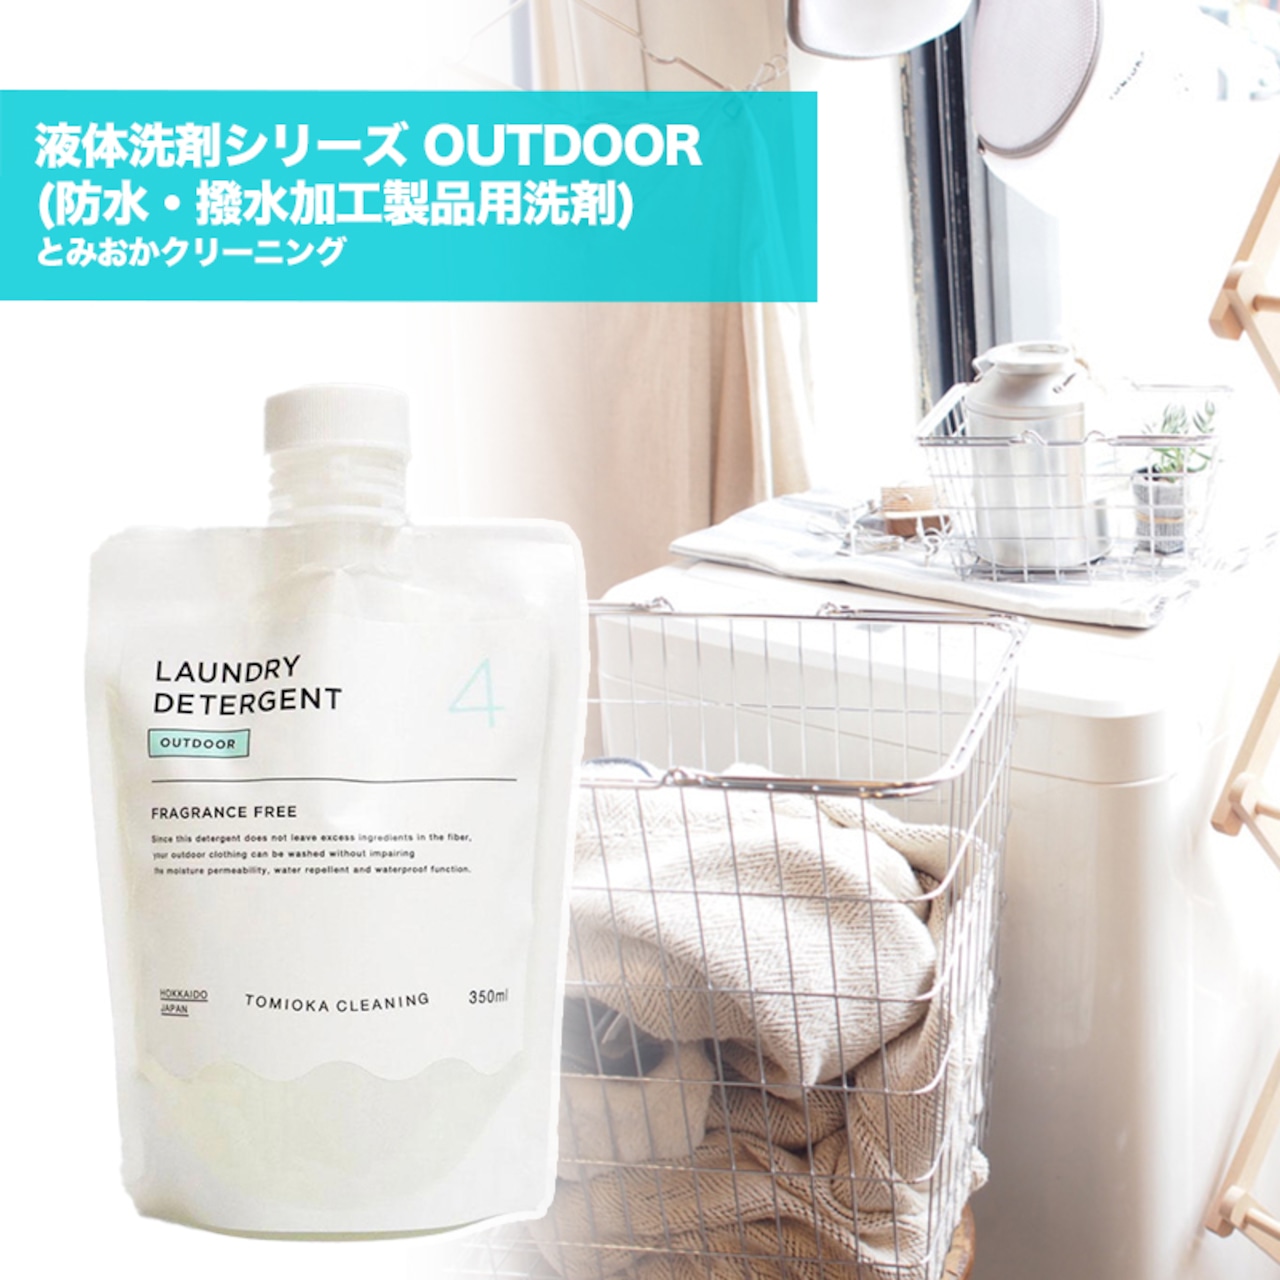 とみおかクリーニング 液体洗剤シリーズ OUTDOOR (防水・撥水加工製品用洗剤) 日本製